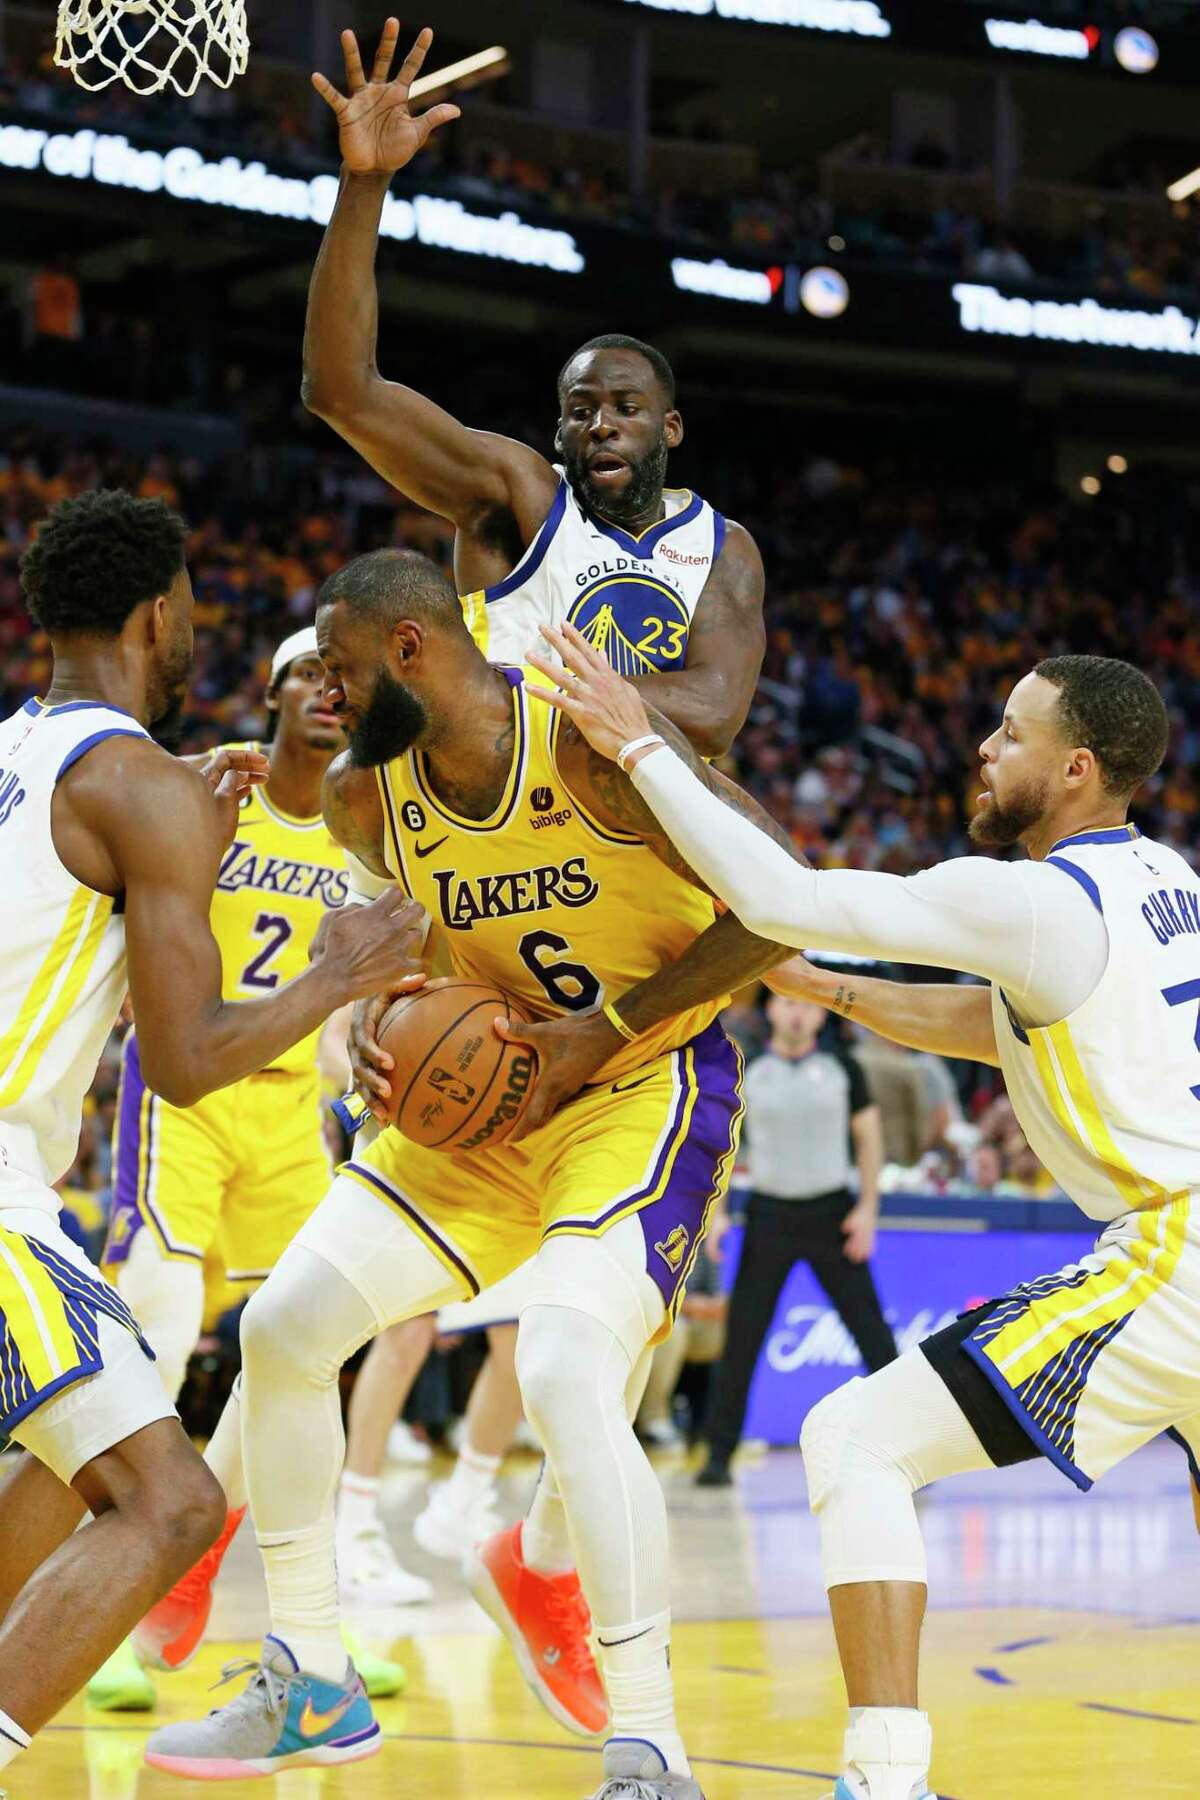 周三，在旧金山举行的NBA西部半决赛第五场比赛中，洛杉矶湖人队前锋勒布朗·詹姆斯在第三节被勇士队三人包夹的情况下得分。